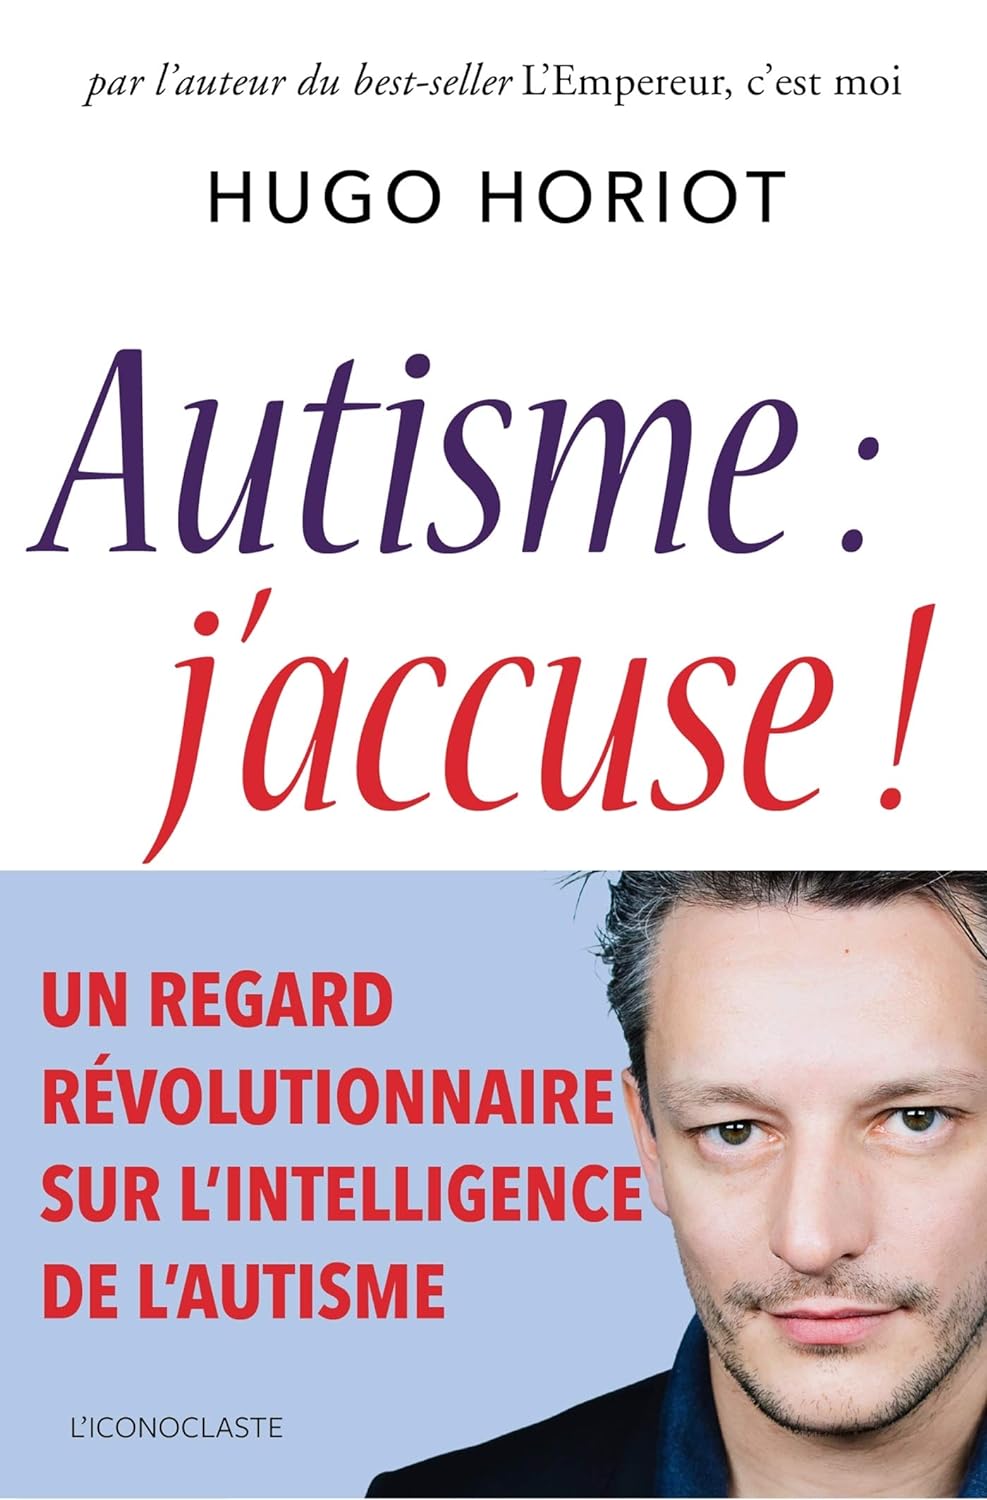 [France] « Autisme, j’accuse ! » (Hugo Horiot, 2018)